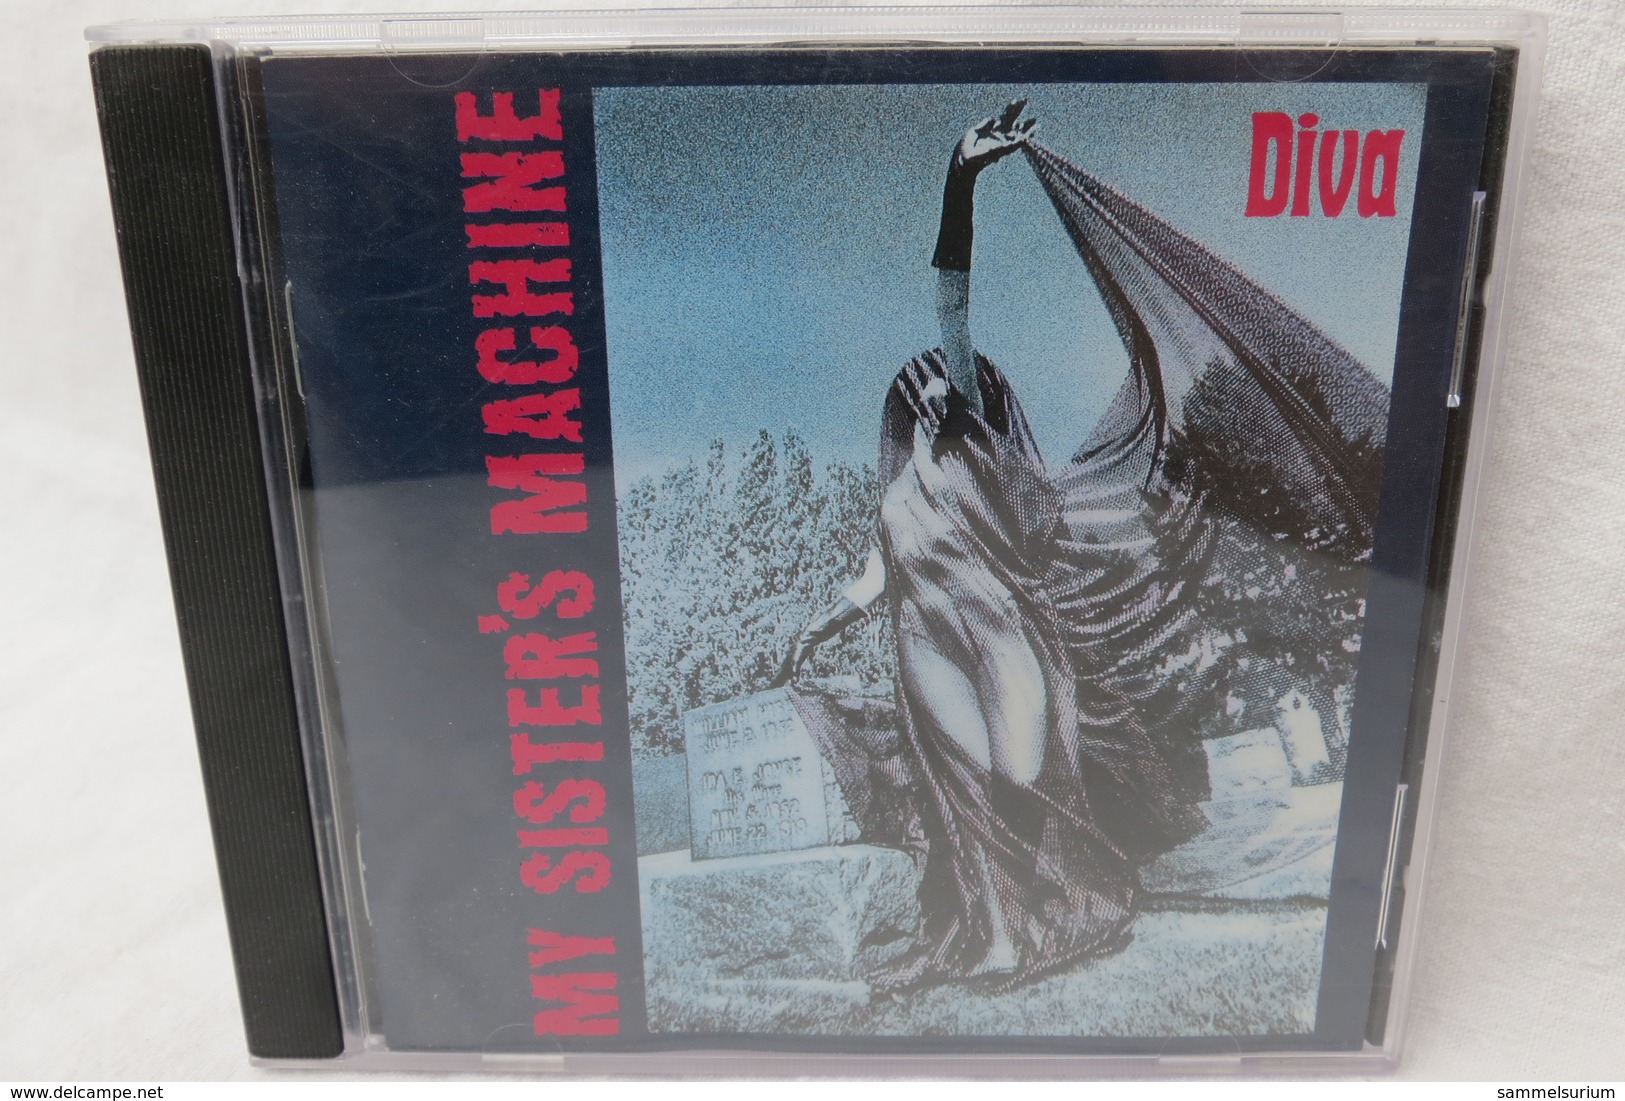 CD "My Sister's Machine" Diva - Hard Rock & Metal